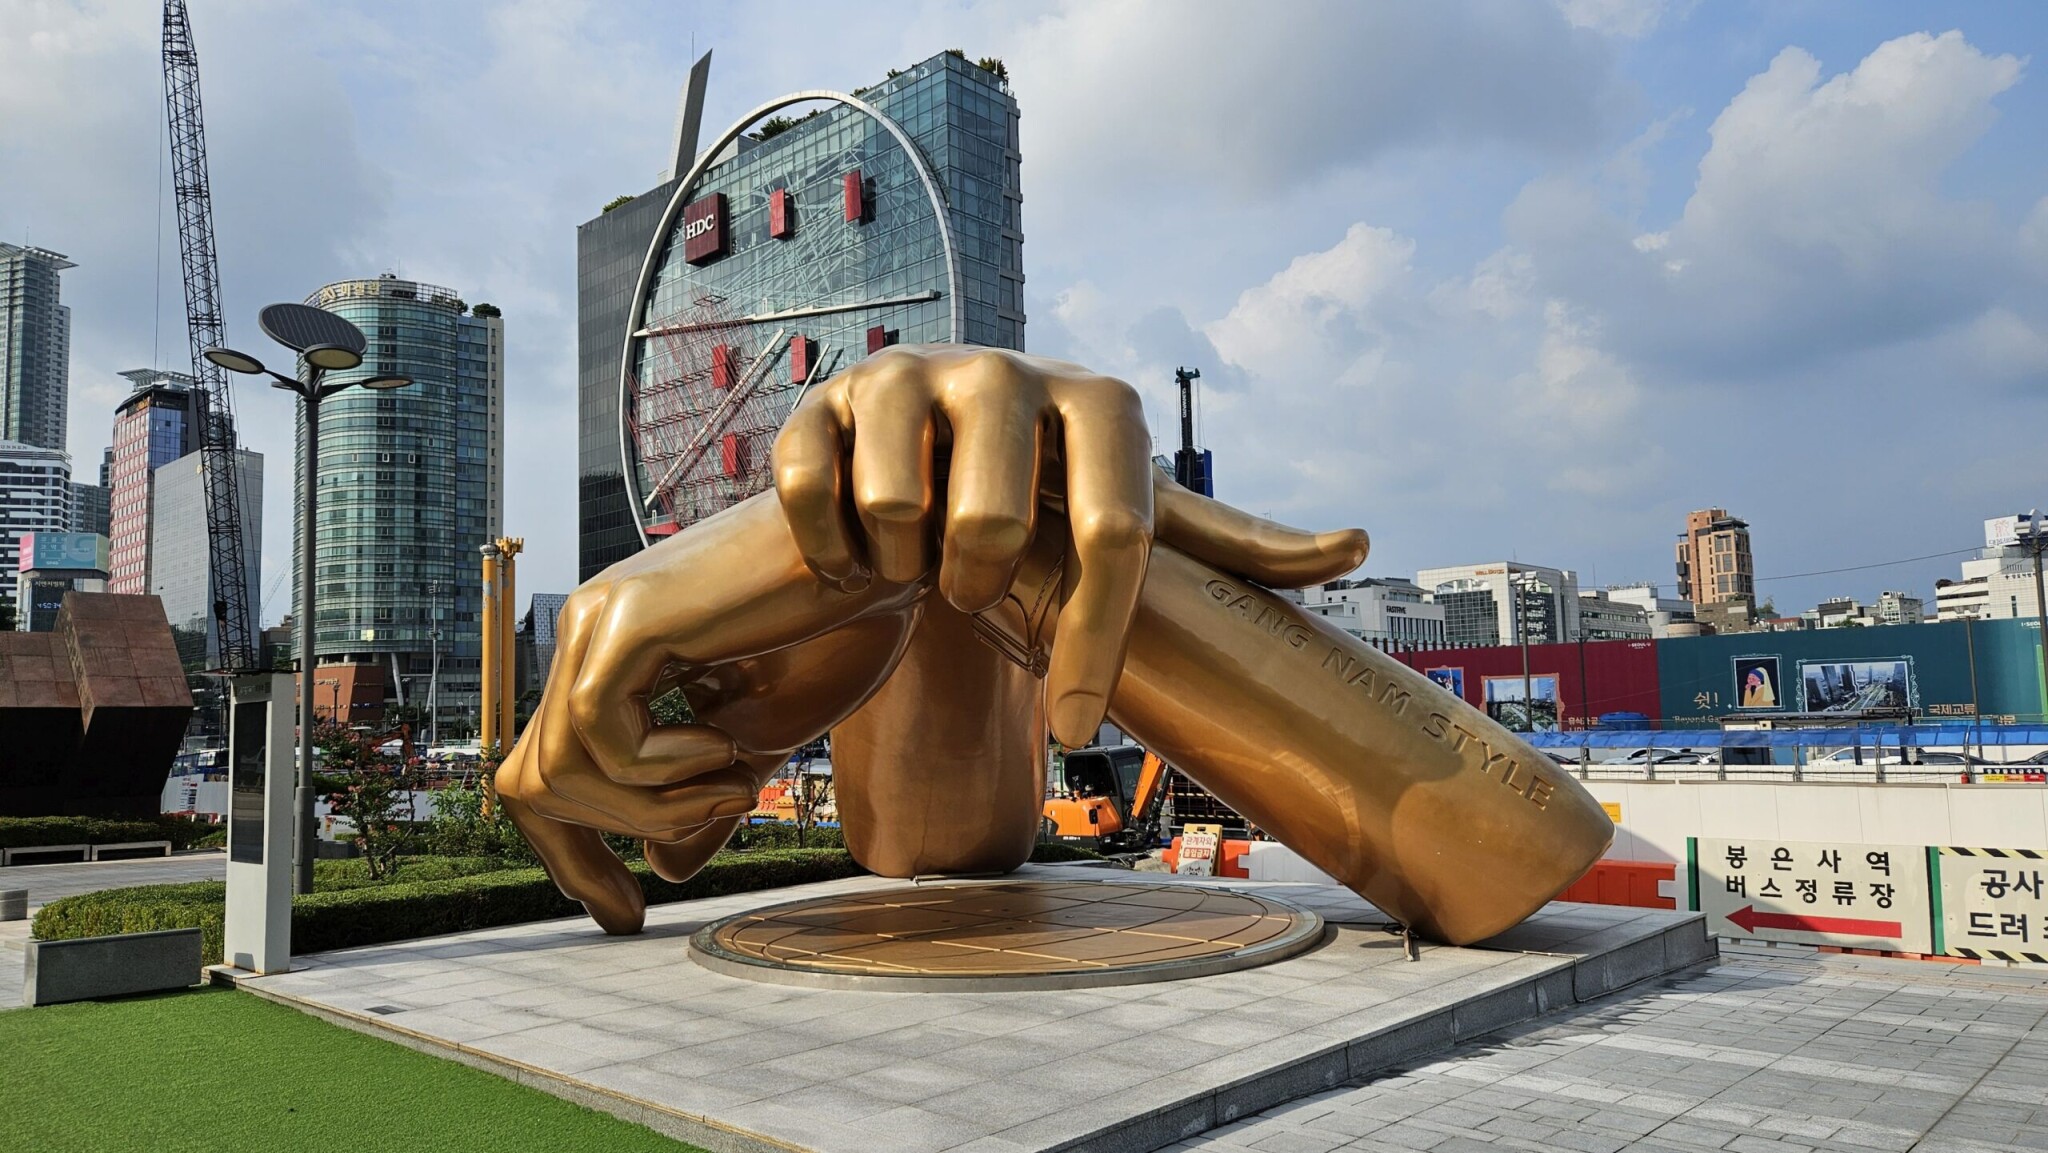 Szöul a k-pop fővárosa, amire büszkék is. Ezt bizonyítja a hatalmas Gangnam Style-szobor, ami akkora, mint egy ház.